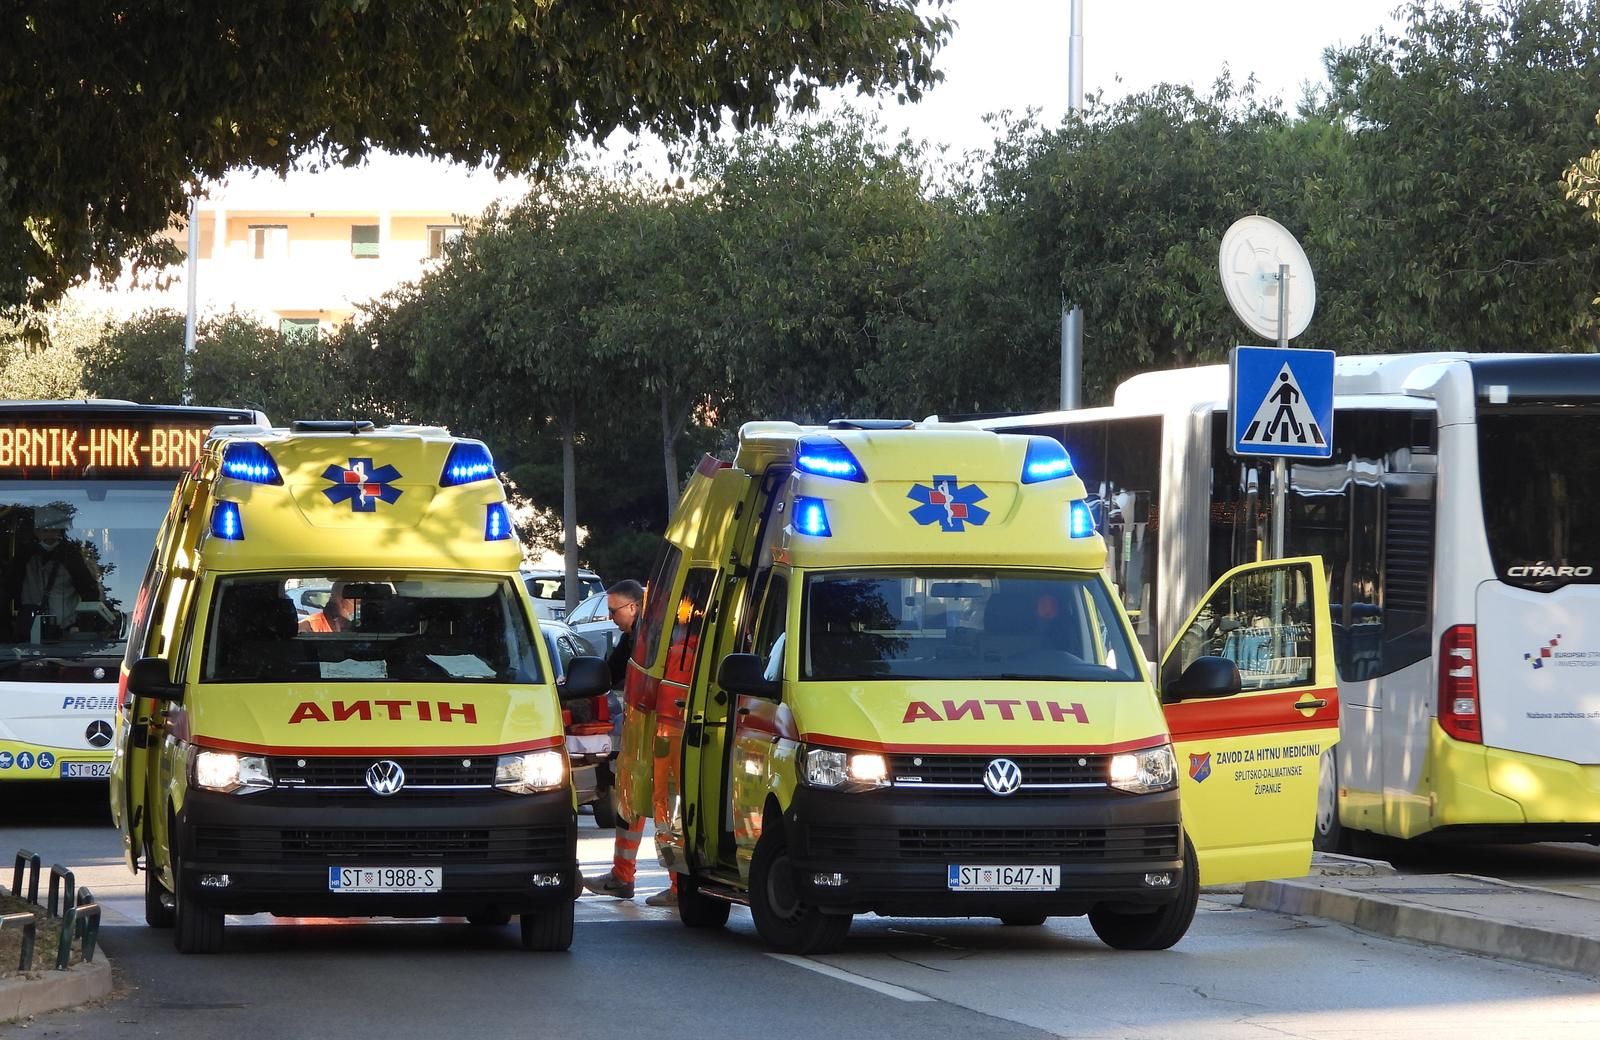 20.10.2021., Split - U kratkom vremenu tri vozila hitne pomoci projurila su Vukovarskom ulicom s upaljenim sirenama. Dvije su pored Pujanki na cesti intervenirale zbog ozlijedjene osobe a treca je produzila na obliznje Mejase